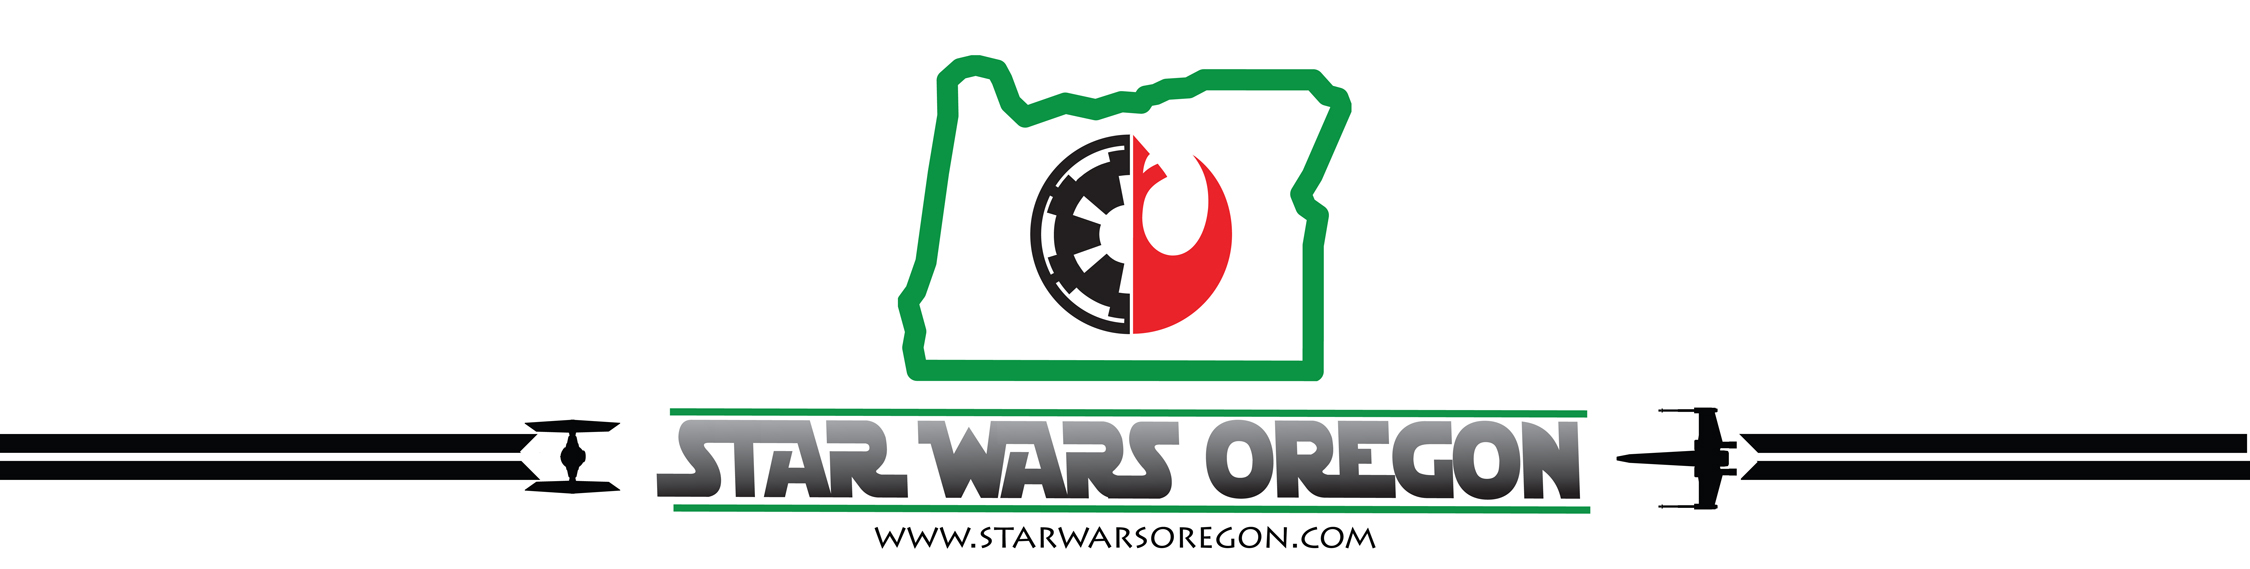 Star Wars Oregon | Choose Your Side